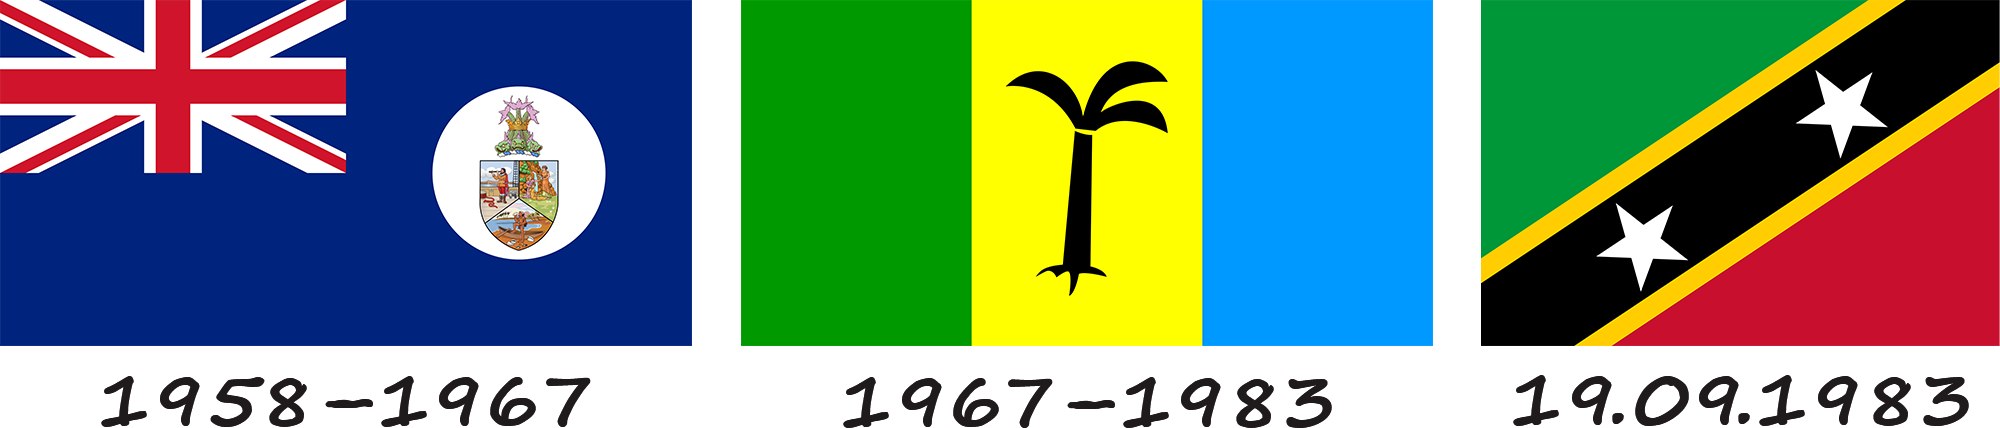 Histoire du drapeau de Saint-Kitts-et-Nevis